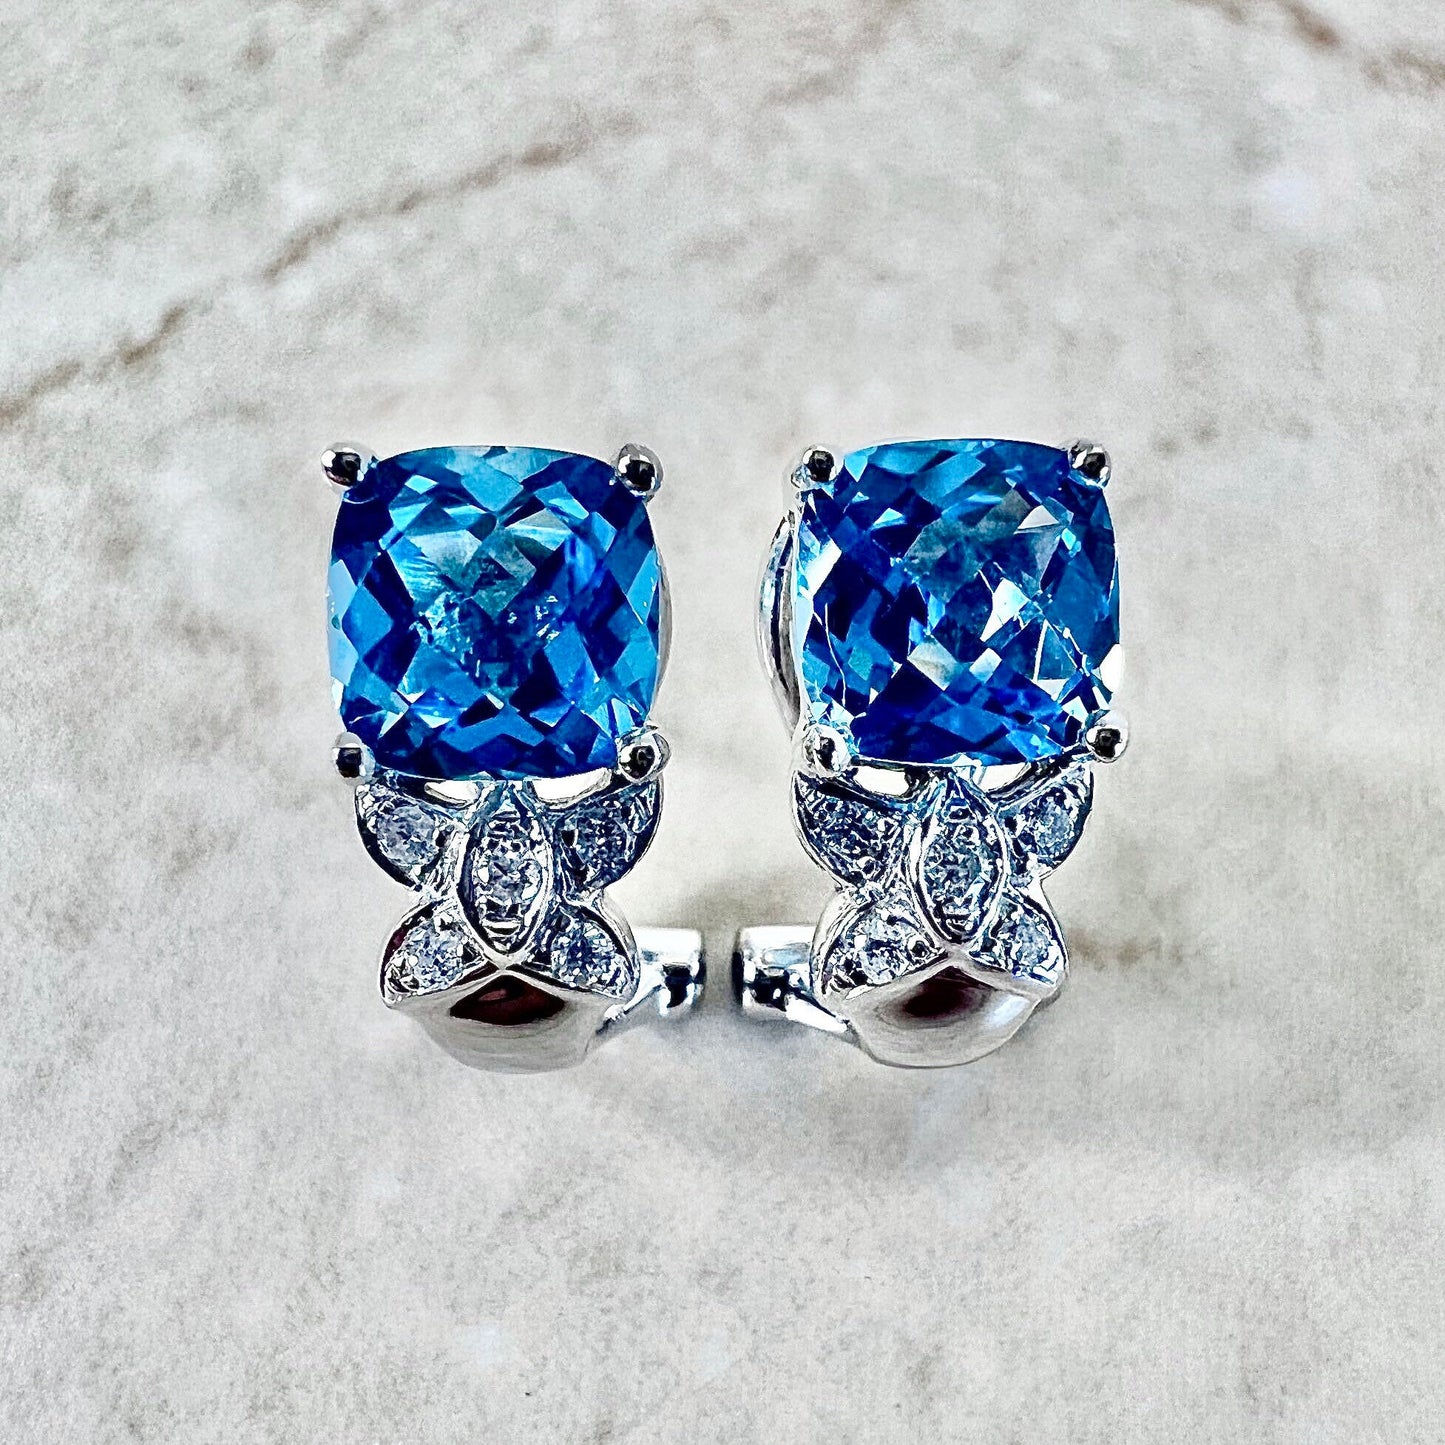 14K Swiss Blue Topaz & Diamond Stud Earrings - White Gold Blue Topaz Earrings - Genuine November December Birthstone - Birthday Gift